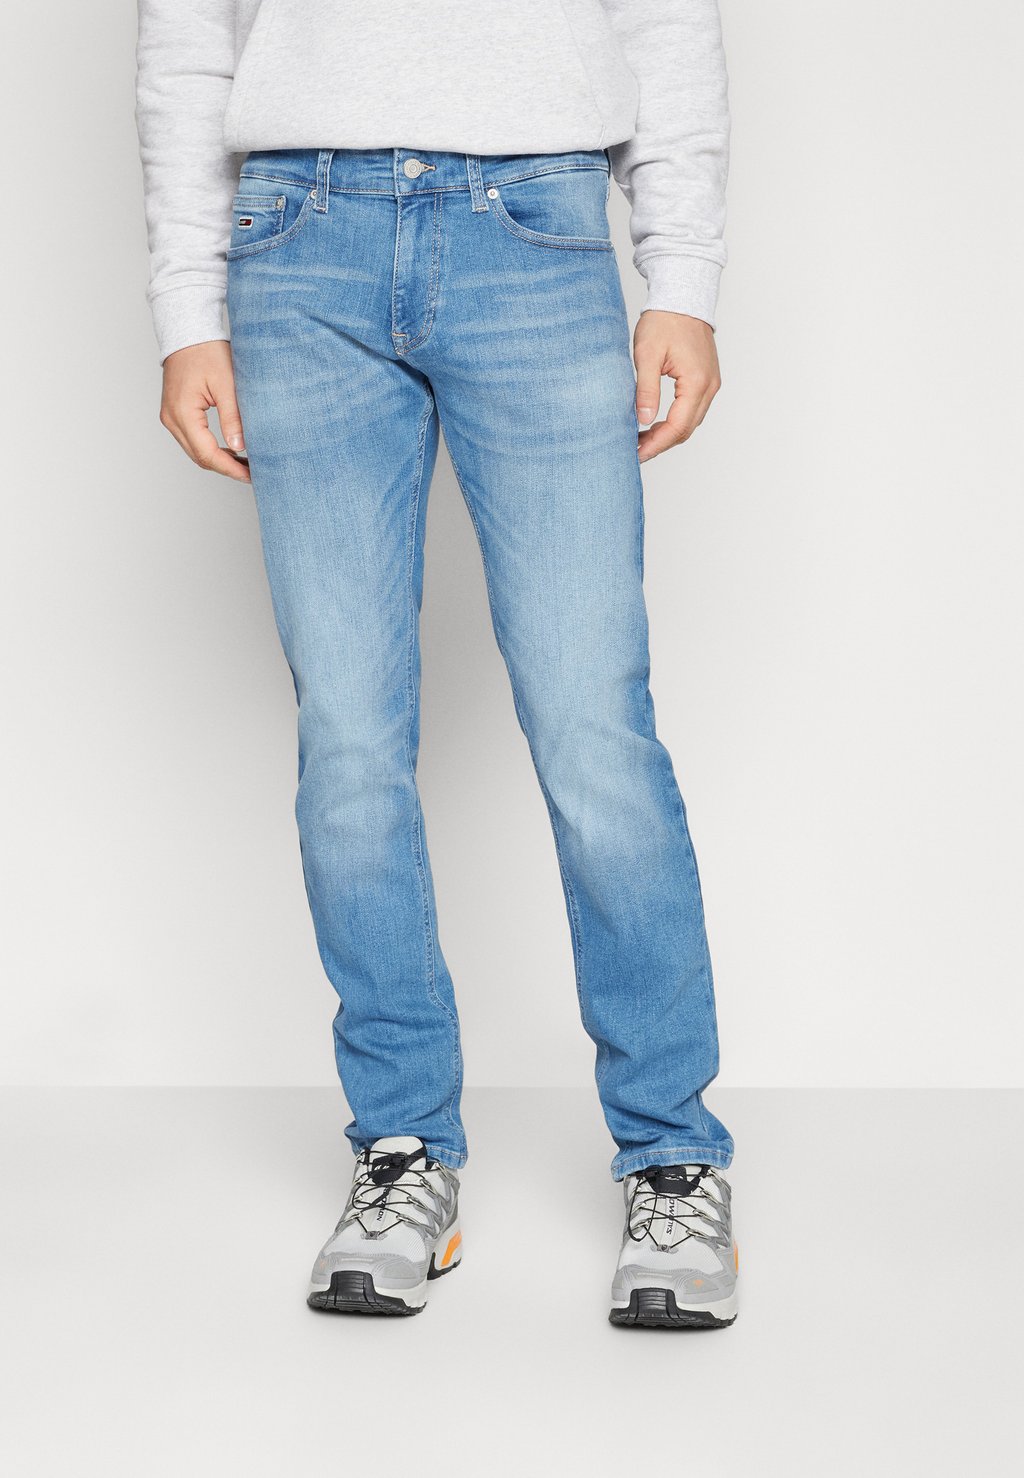 Джинсы приталенного кроя Scanton Slim Tommy Jeans, цвет denim medium джинсы свободного кроя tommy jeans цвет denim medium